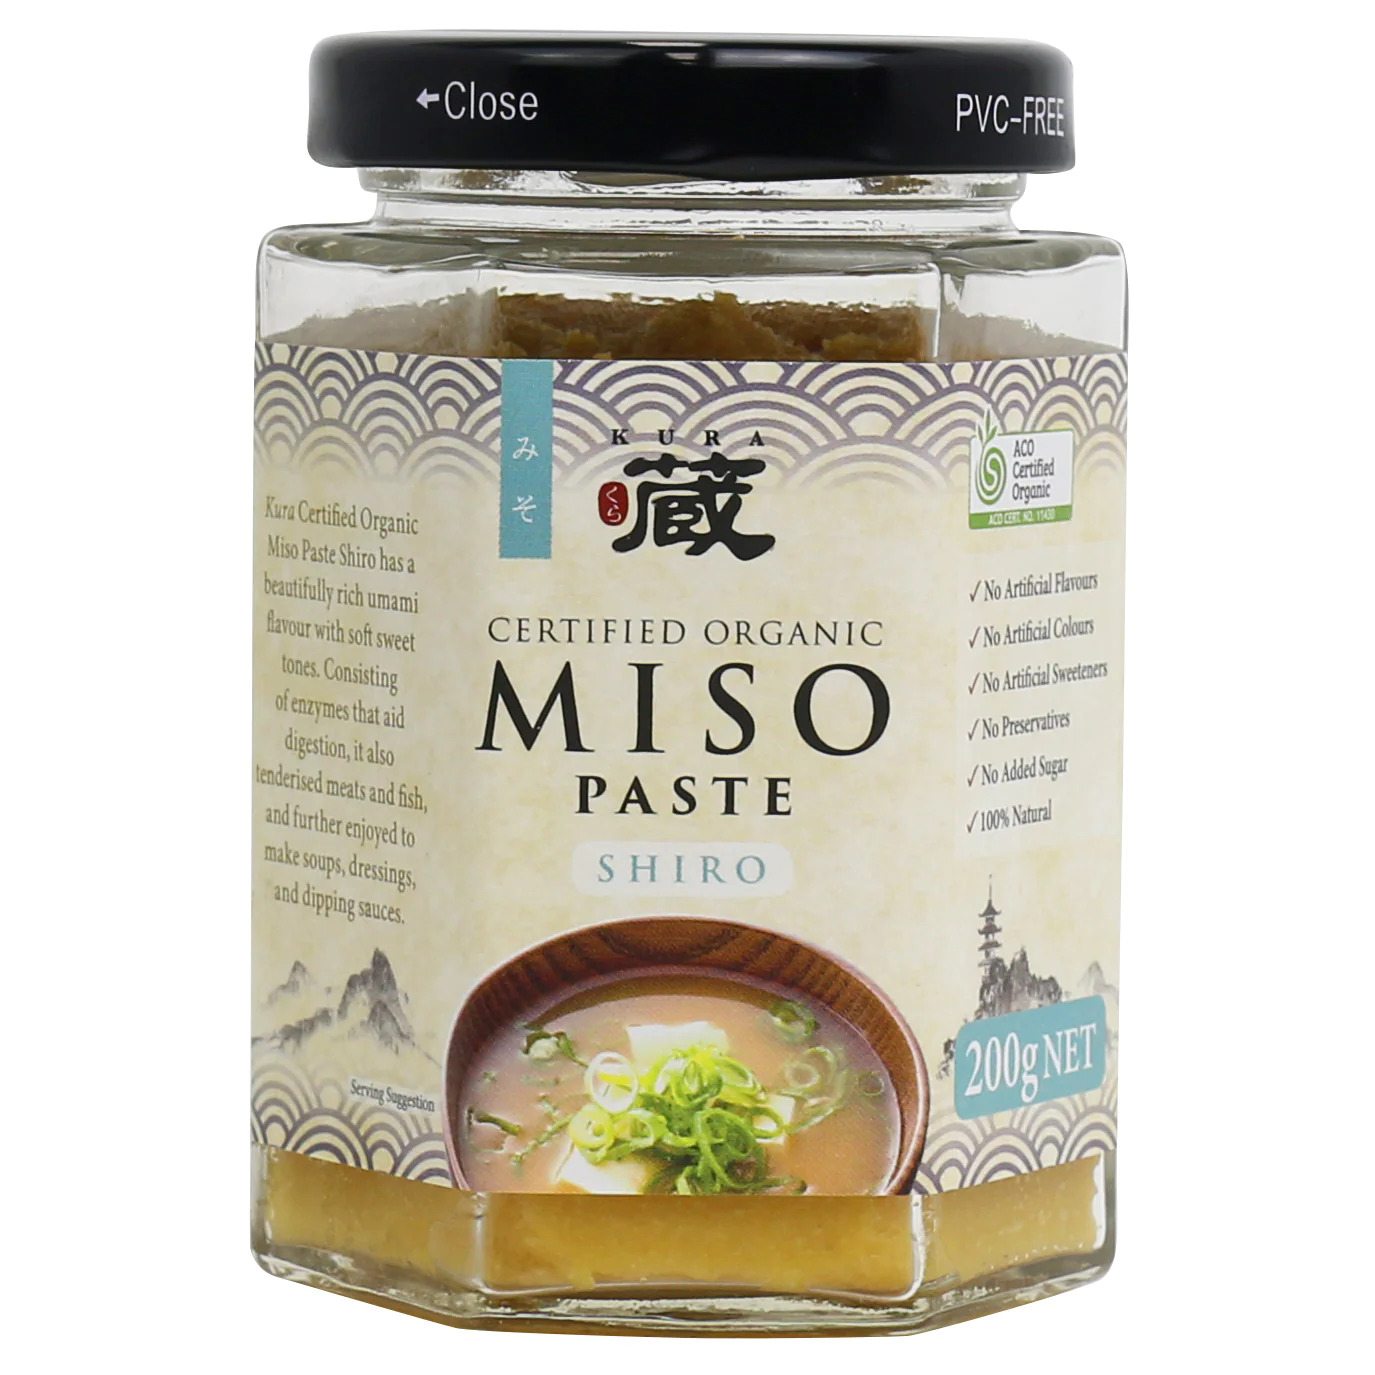 Kura Certified Organic Miso Paste Shiro 200g